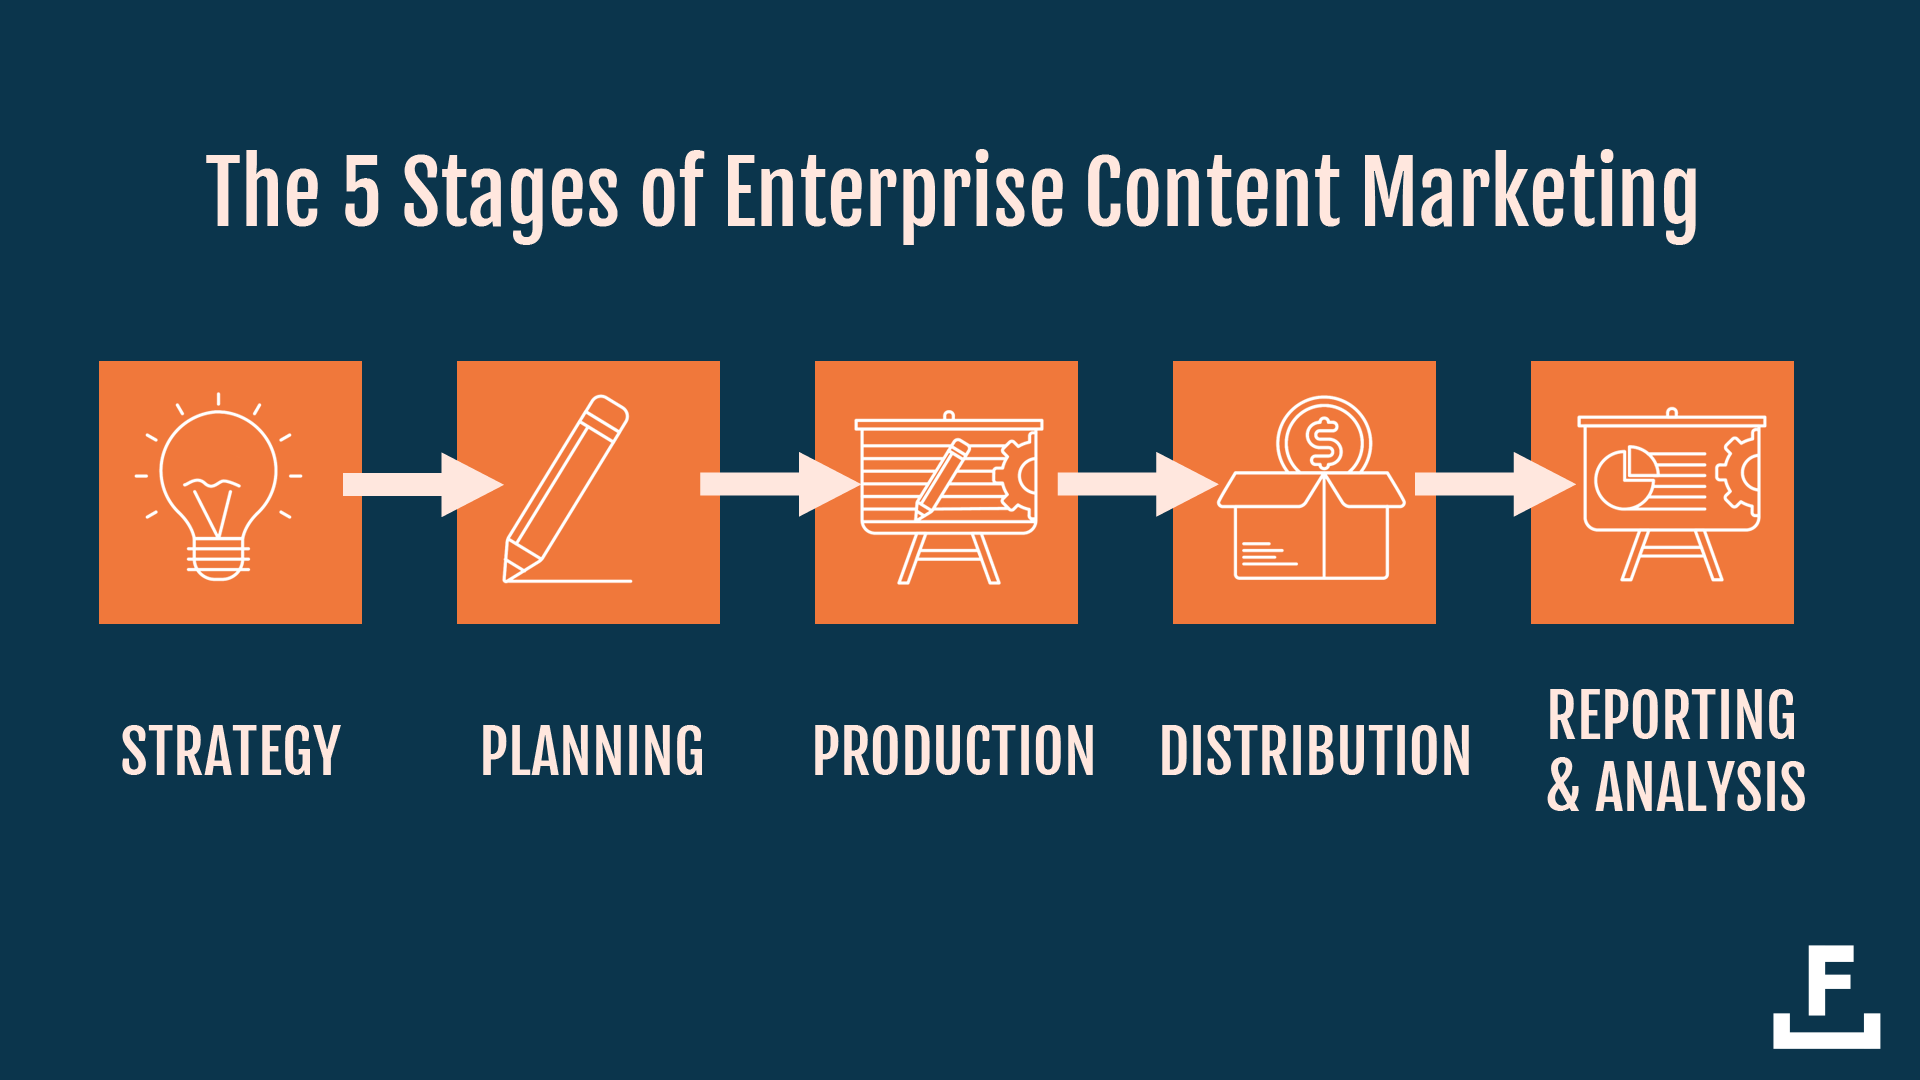 エンタープライズレベルでコンテンツを製品化するには、戦略、計画、制作、配布、分析の 5 つの段階を経る必要があります。